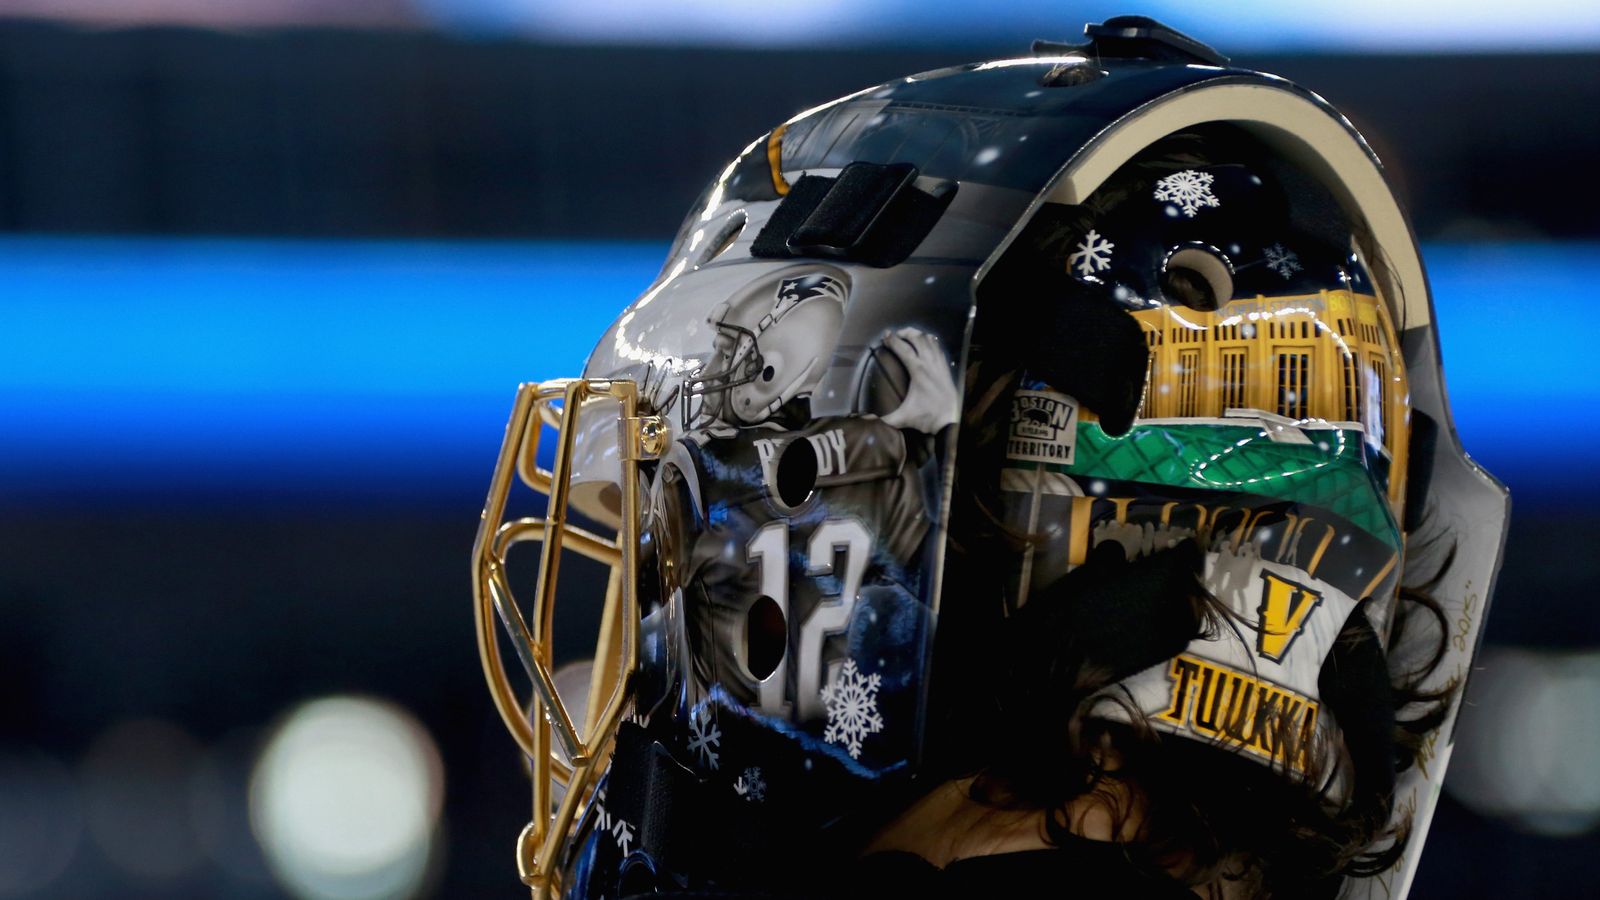 2019 NHL Winter Classic: Bruins' Tuukka Rask had custom helmet